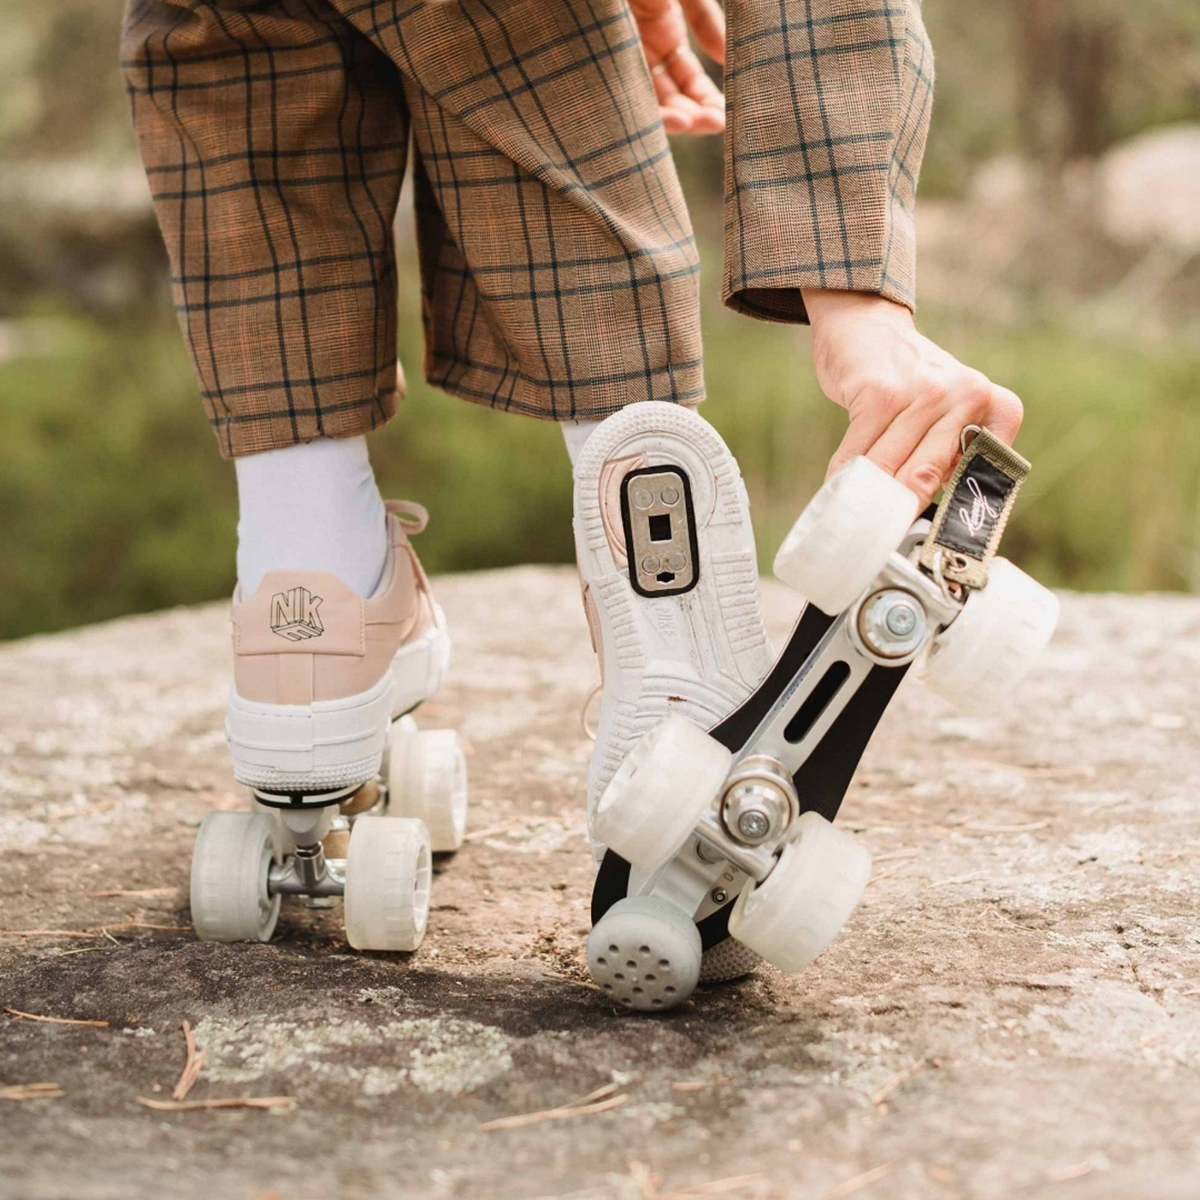 Ce super gadget transforme nos sneakers en patins à roulettes